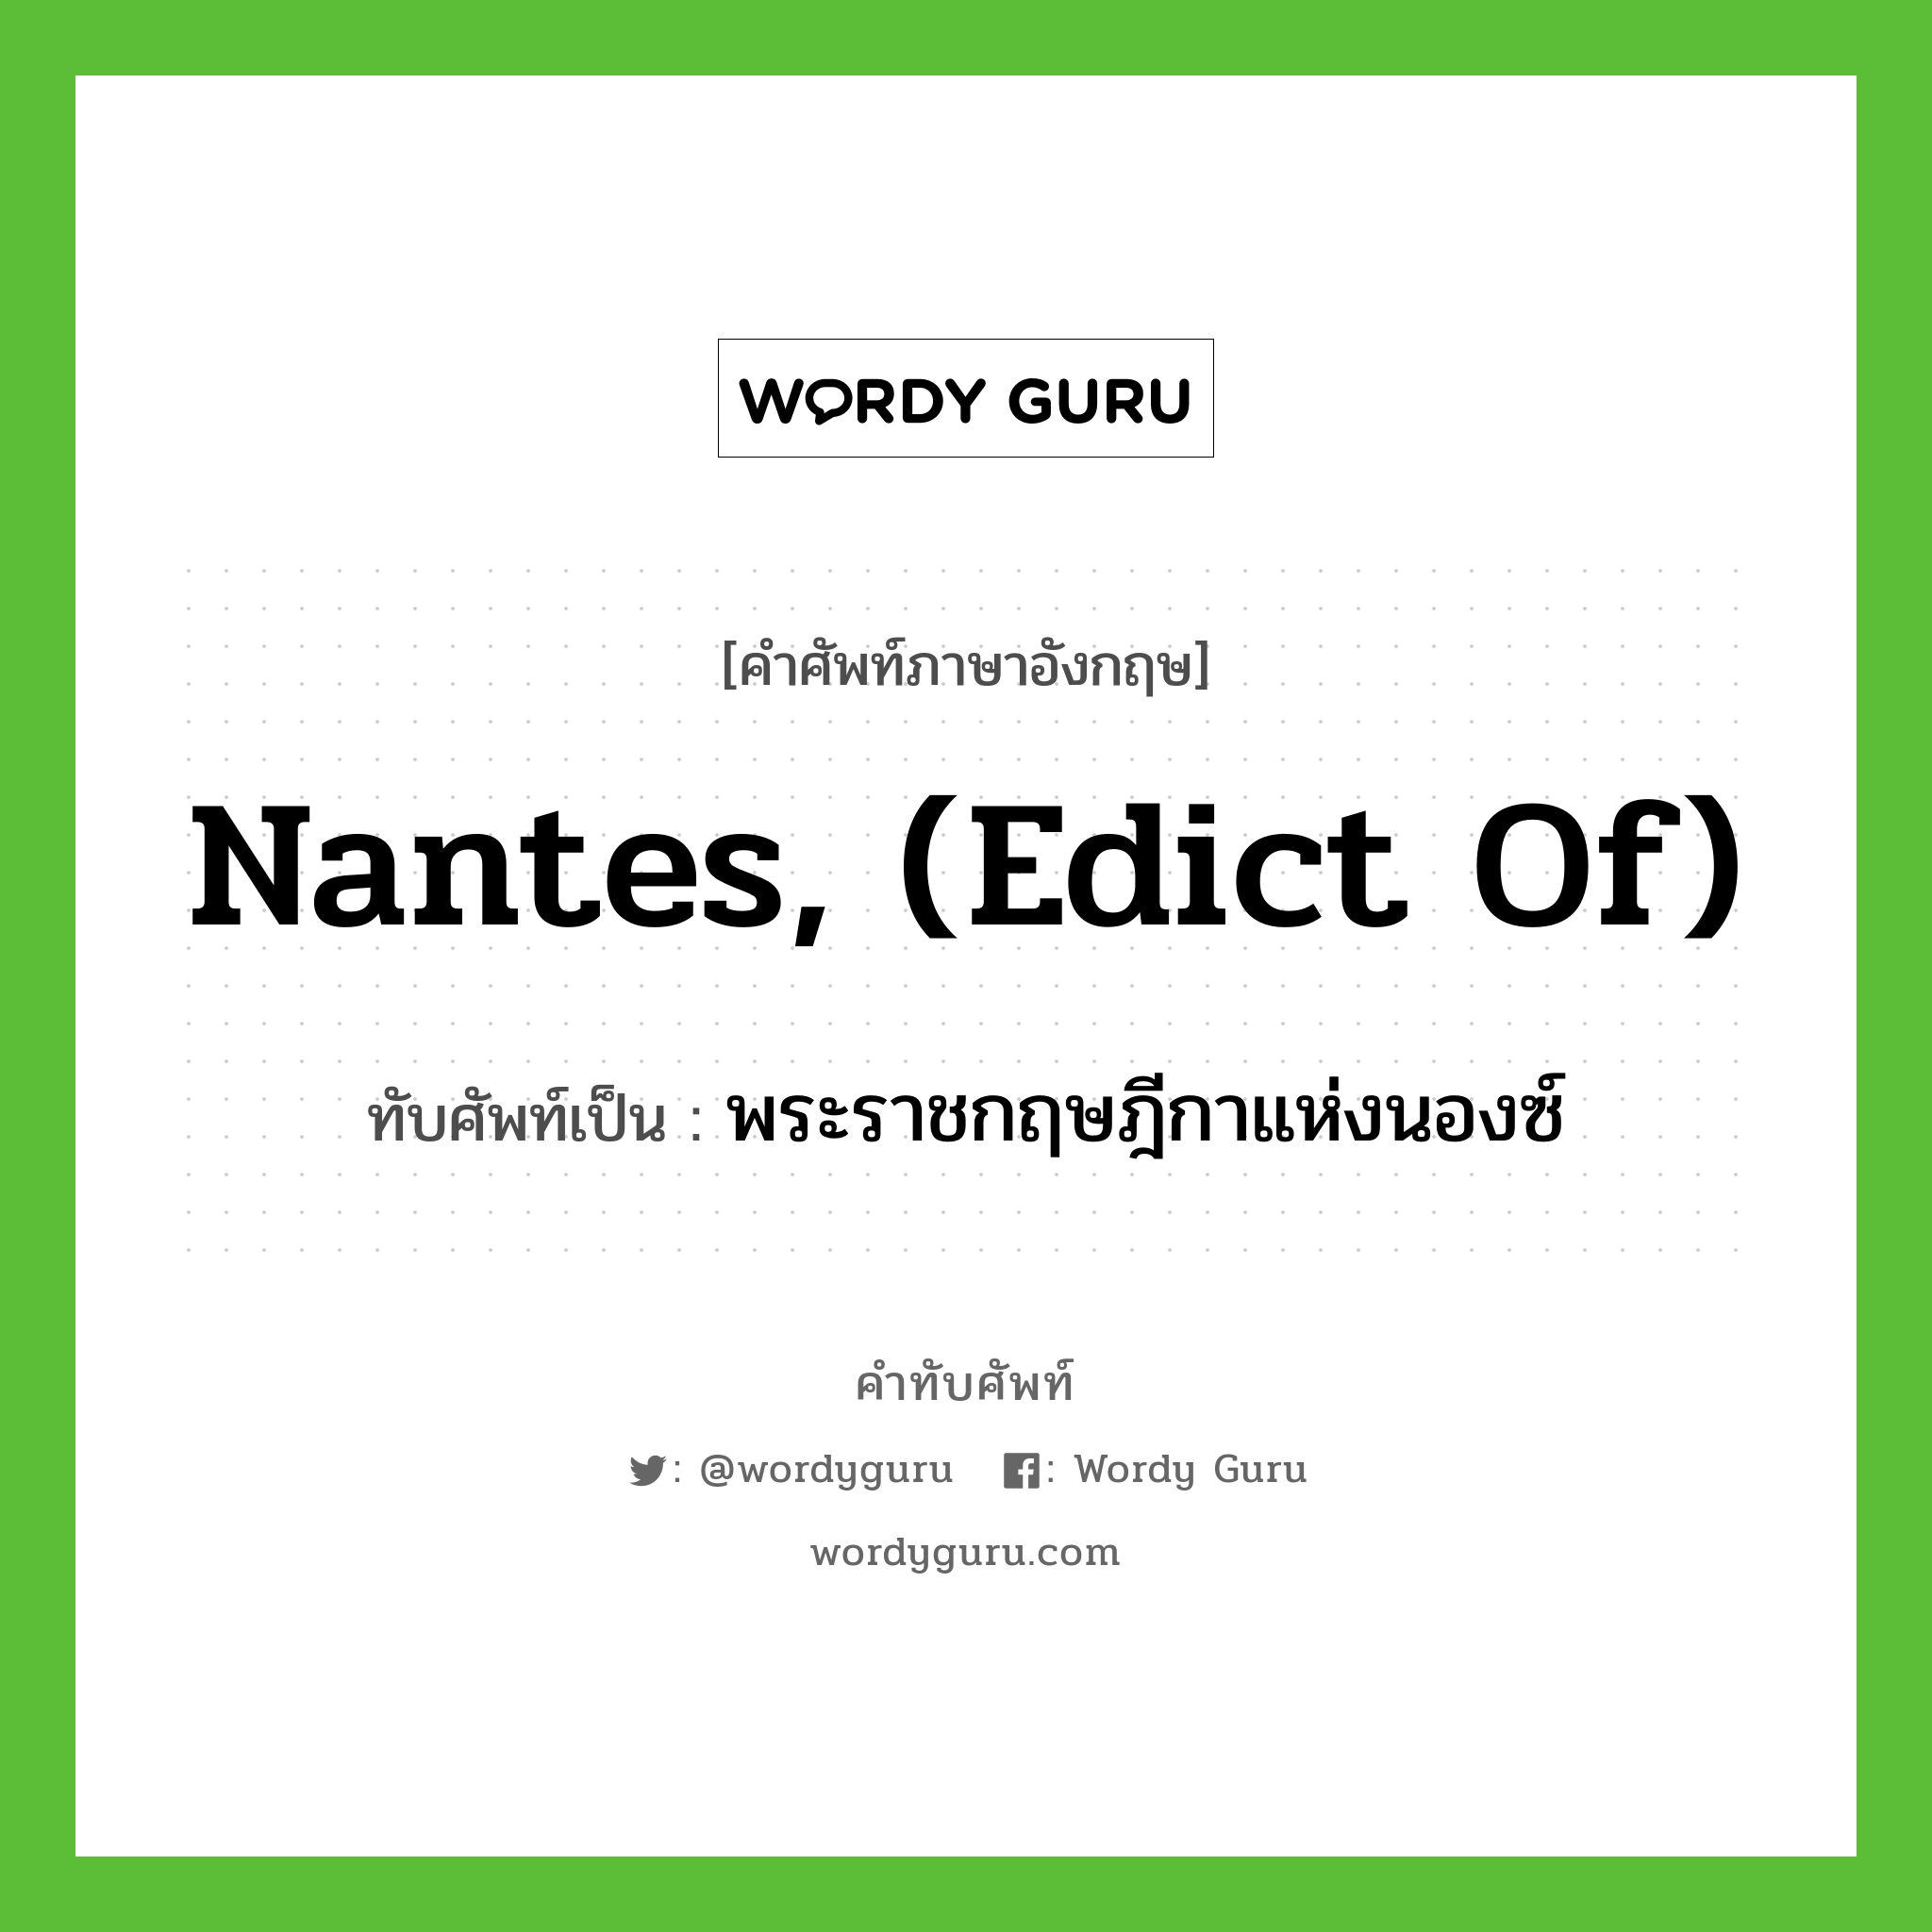 Nantes, (Edict of) เขียนเป็นคำไทยว่าอะไร?, คำศัพท์ภาษาอังกฤษ Nantes, (Edict of) ทับศัพท์เป็น พระราชกฤษฎีกาแห่งนองซ์